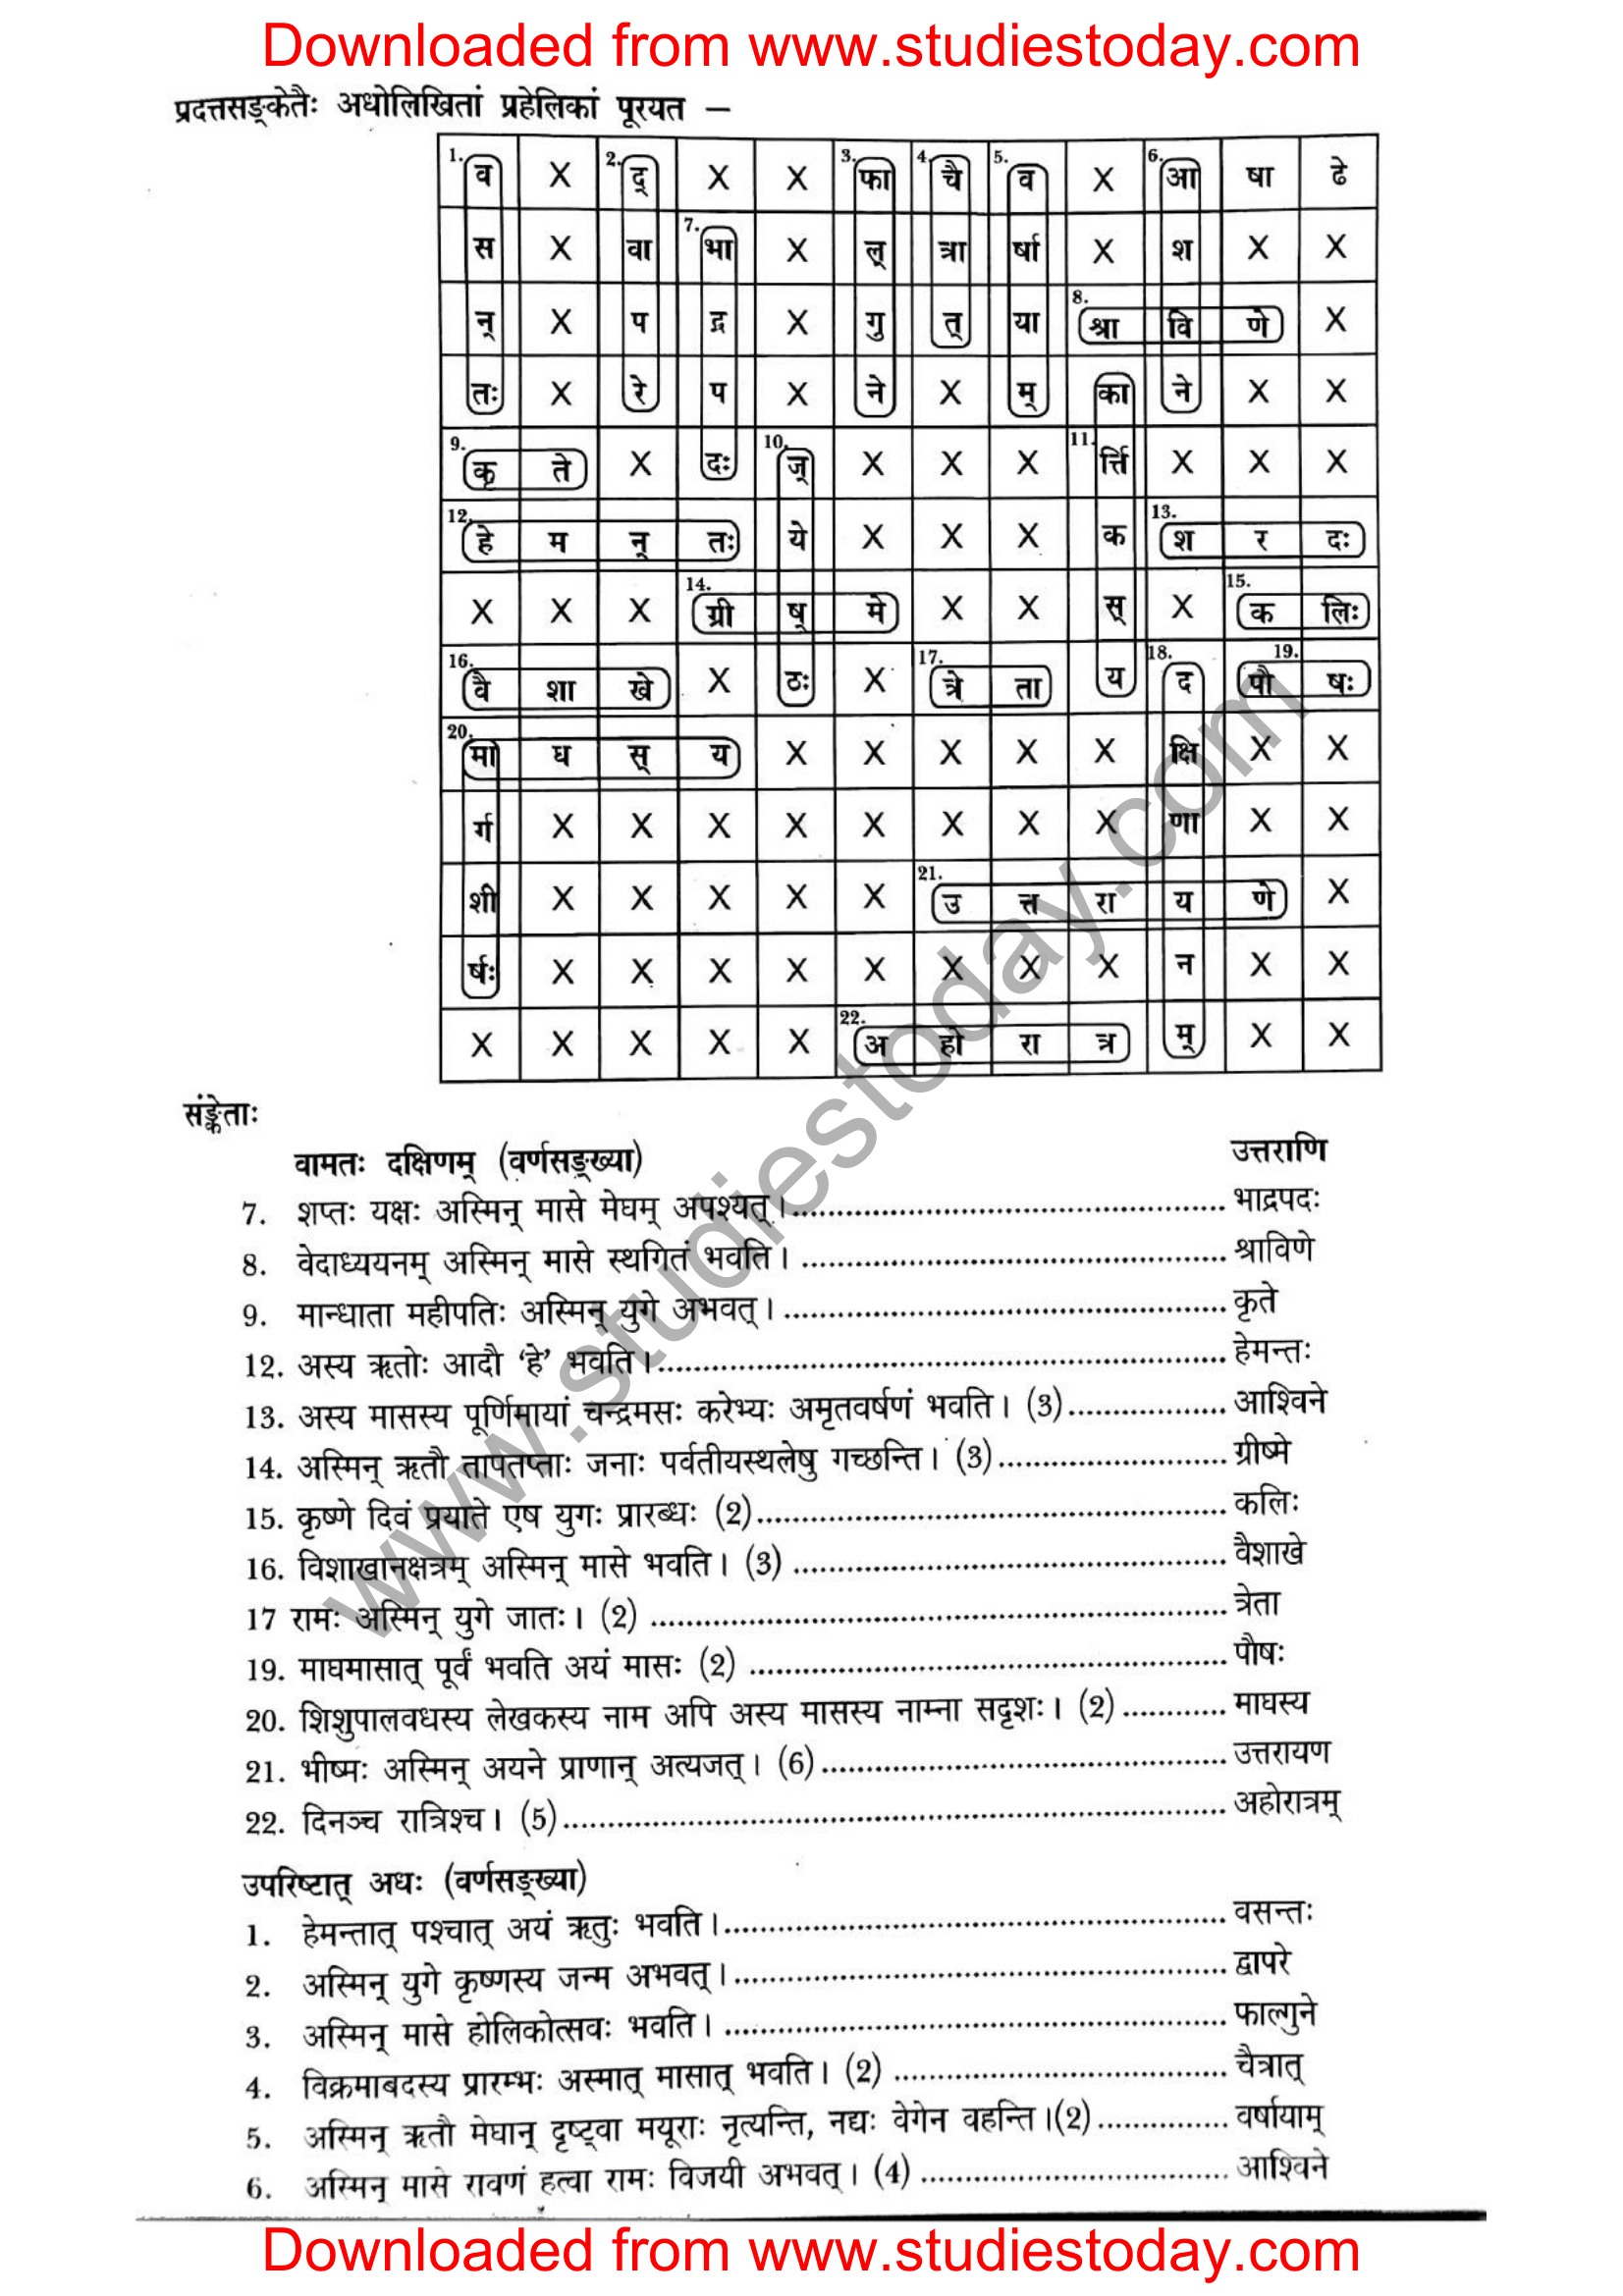 ncert-solutions-class-12-sanskrit-ritikia-chapter-2-10